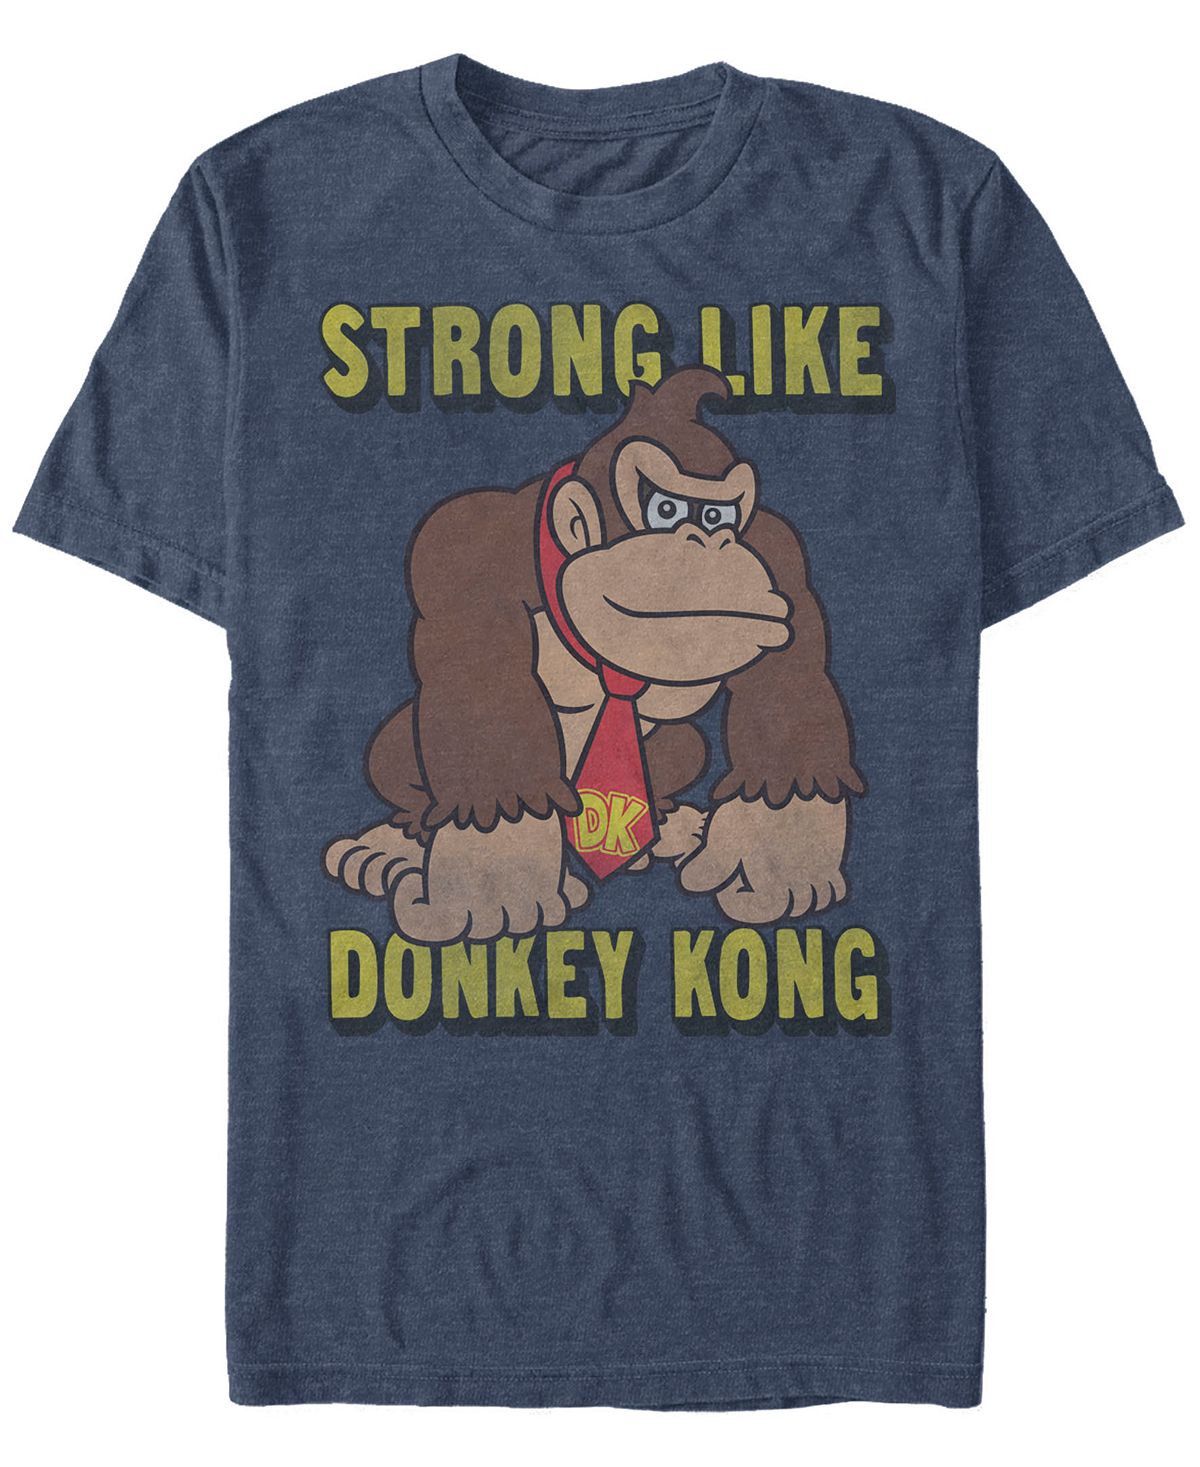 Мужская футболка с коротким рукавом nintendo donkey kong strong like donkey kong Fifth Sun, мульти пенал choco loco donkey products do400416